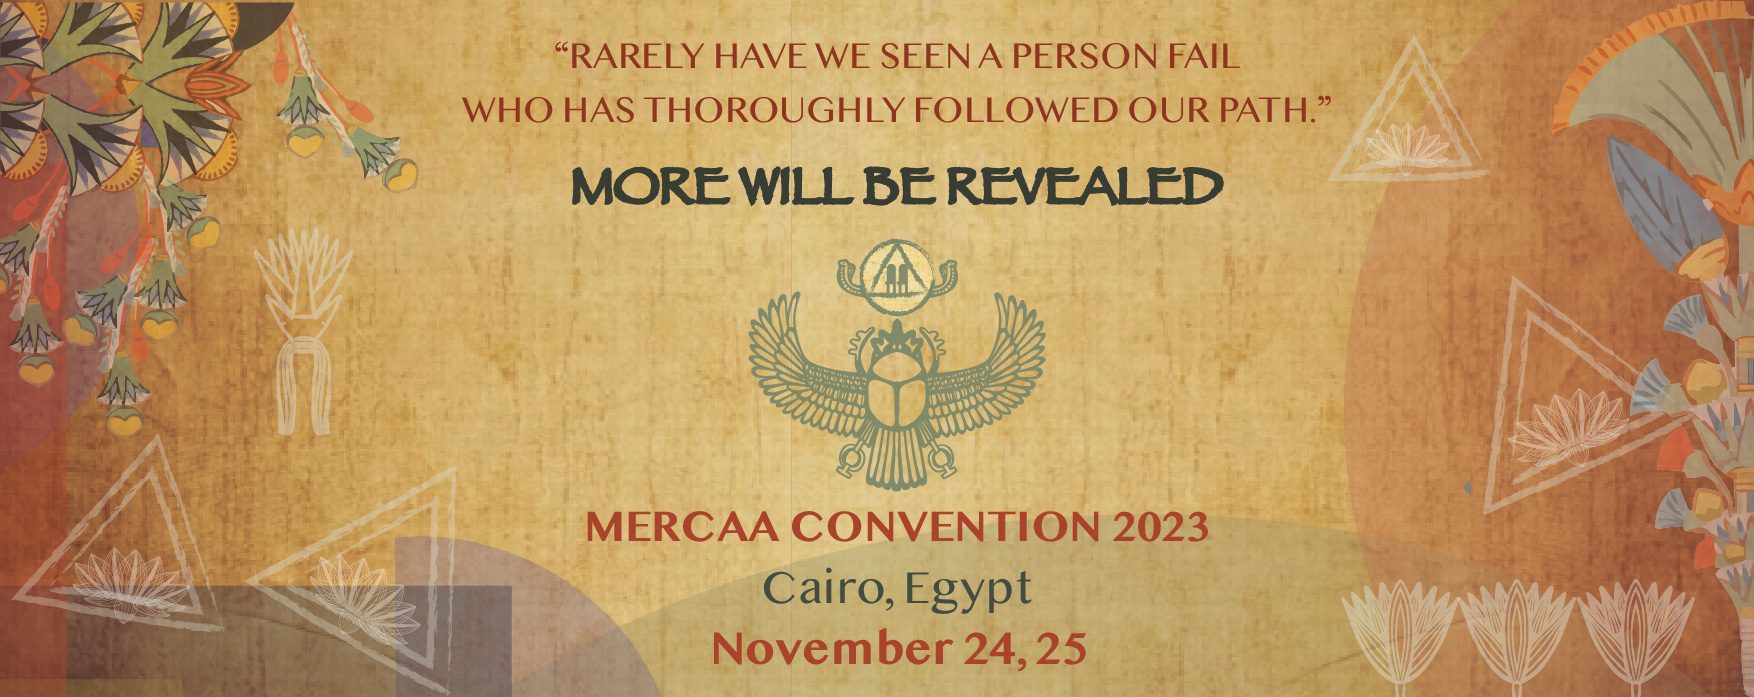 MERCAA Convention 2023